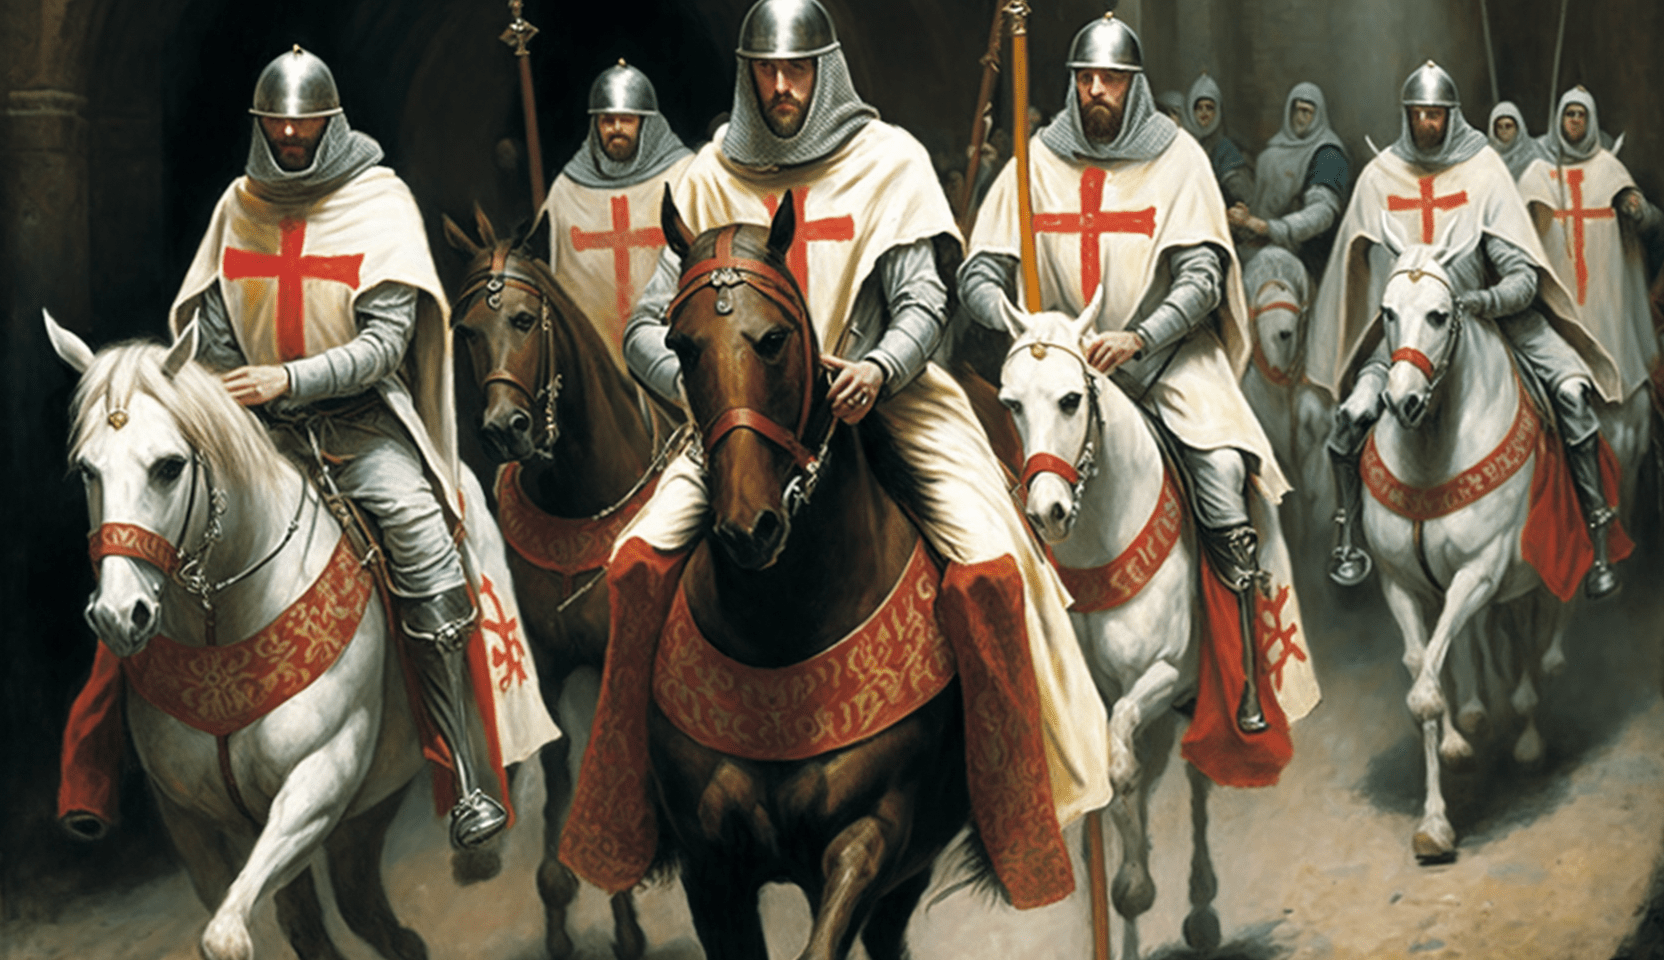 History  Grand Encampment Knights Templar